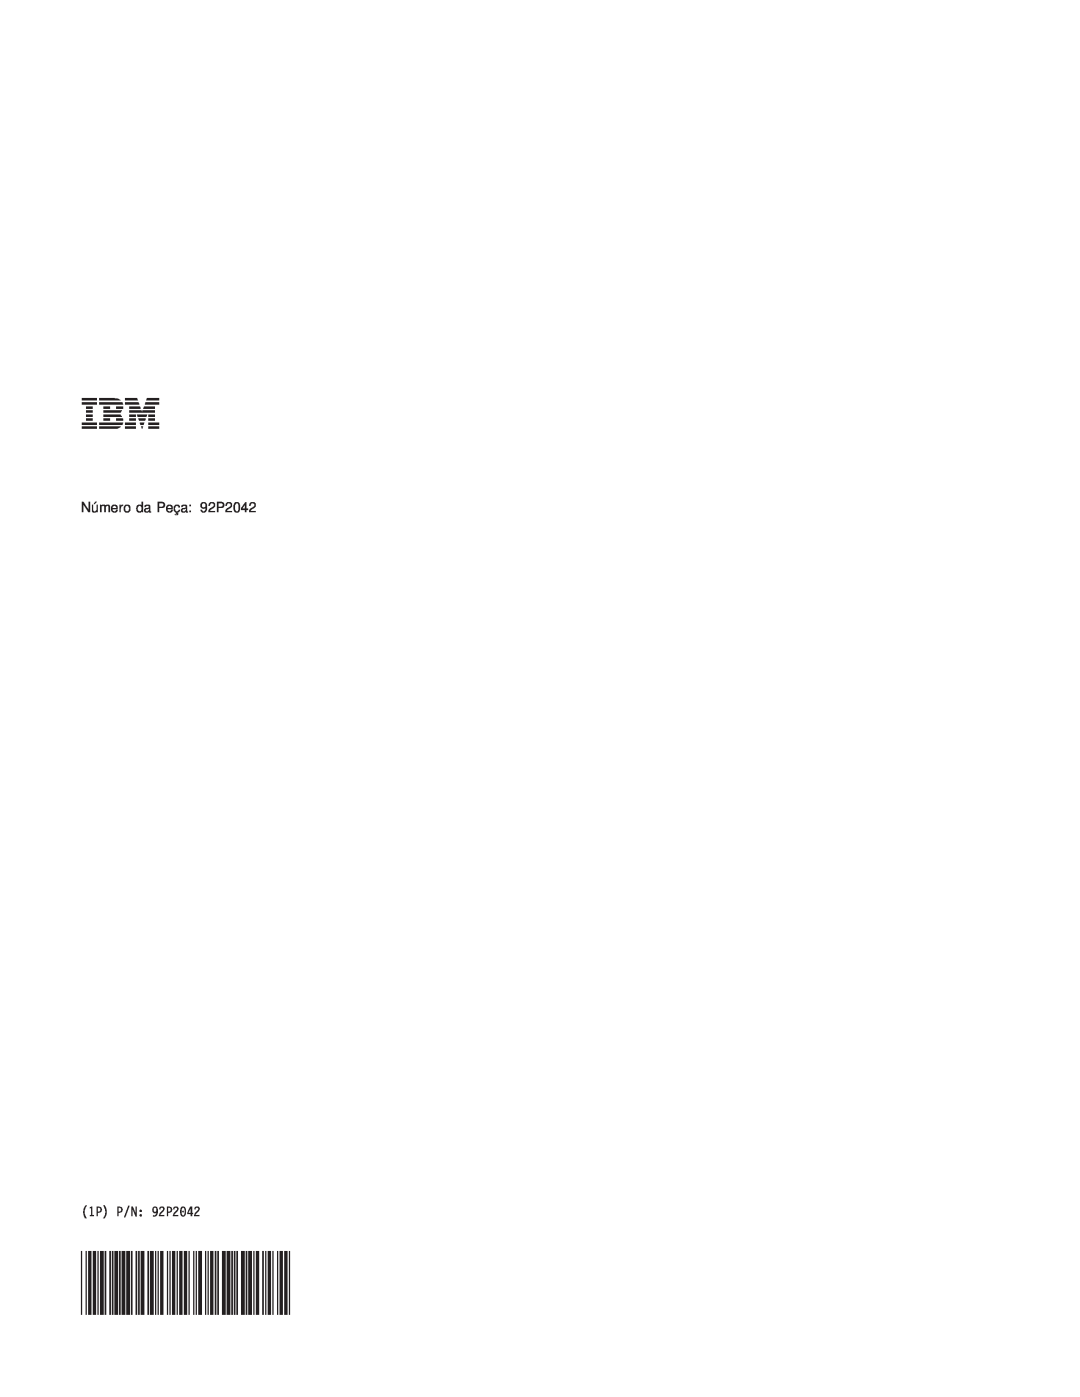 IBM R50 manual Número da Peça: 92P2042, 1P P/N 92P2042 